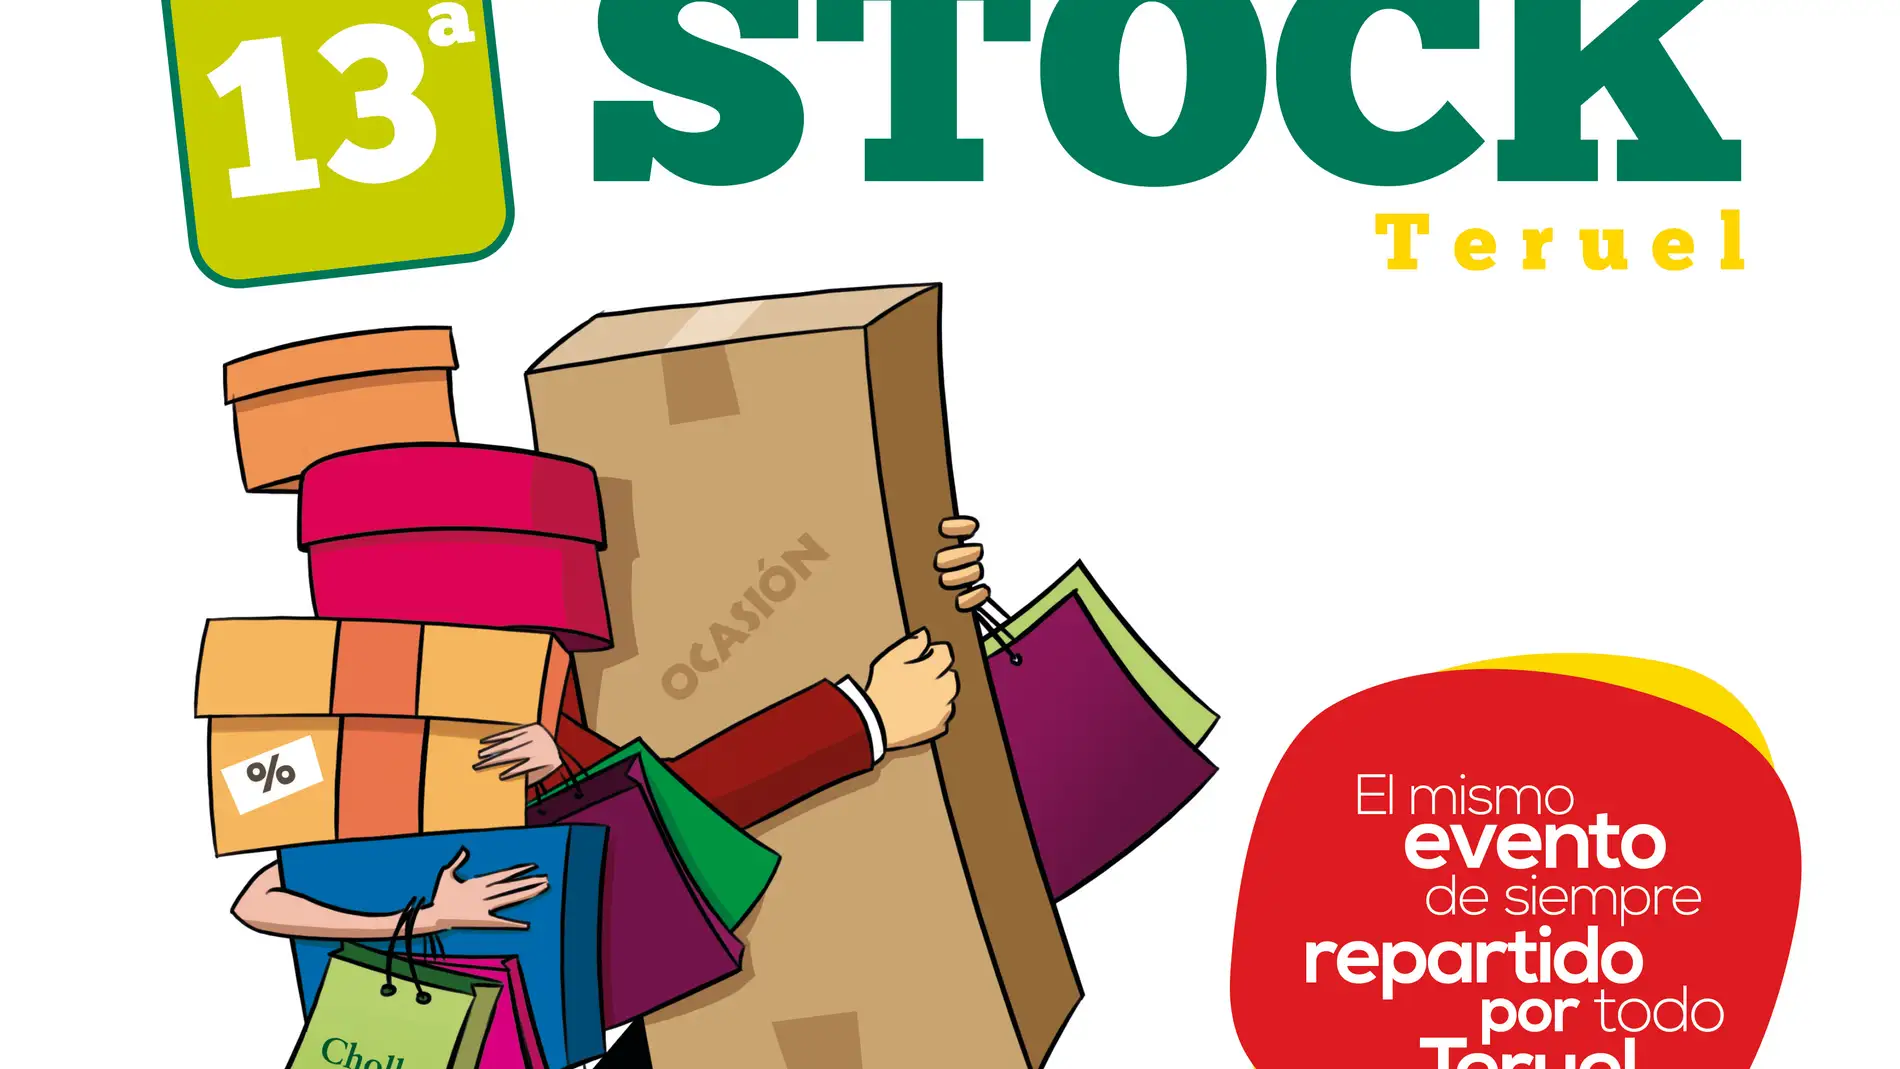 Cartel Feria Stock